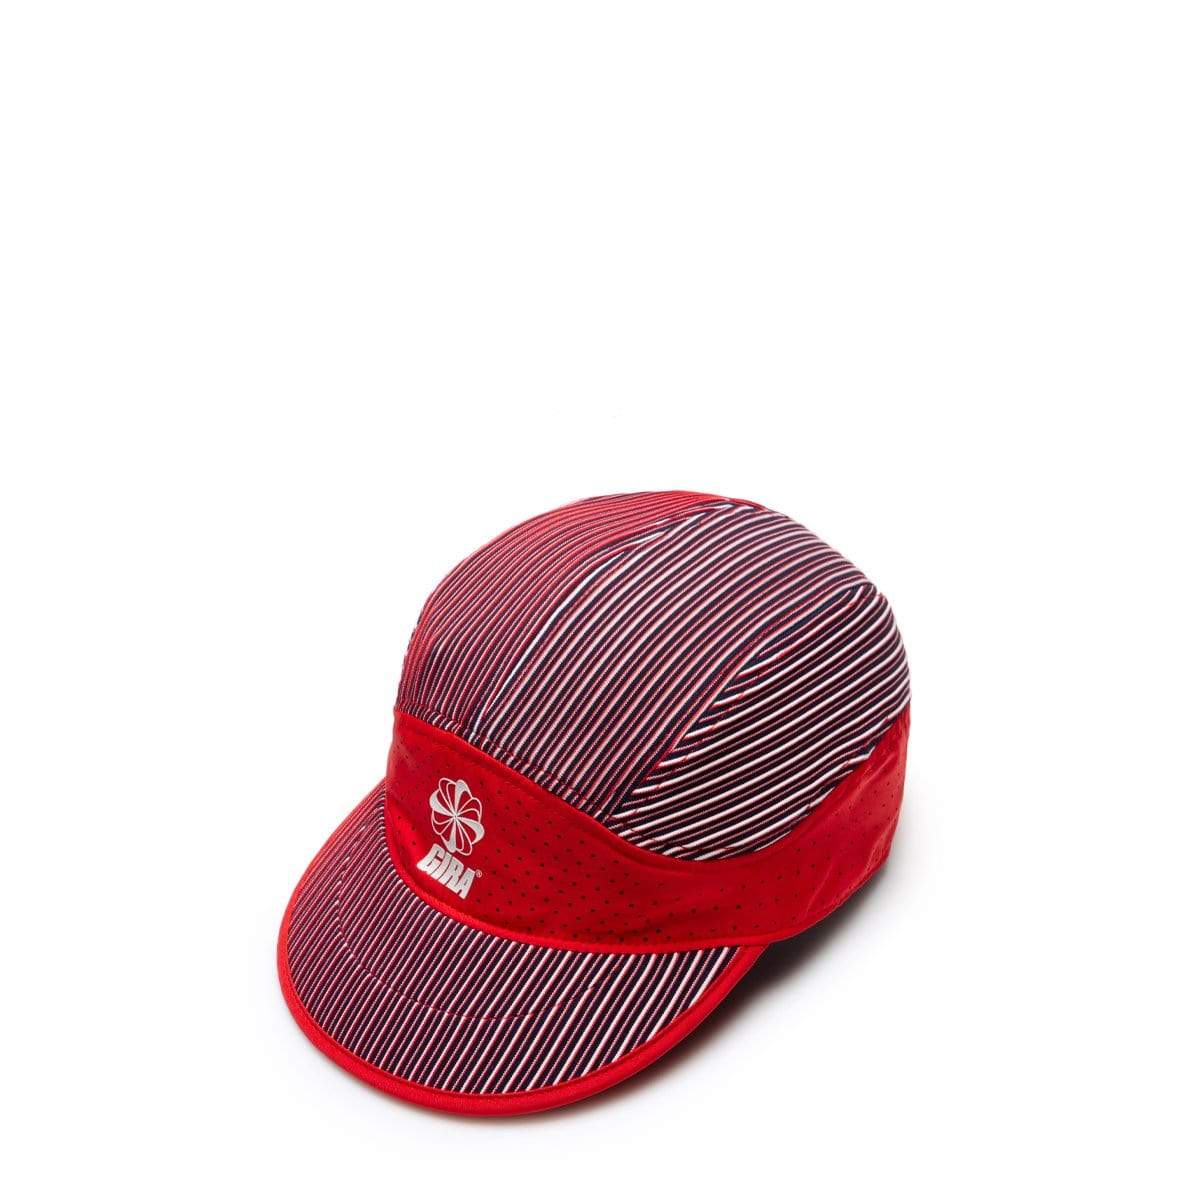 Nike Headwear UNIVERSITY RED/BLACK/SAIL/SAIL [657] / O/S x Gyakusou Unisex Cap